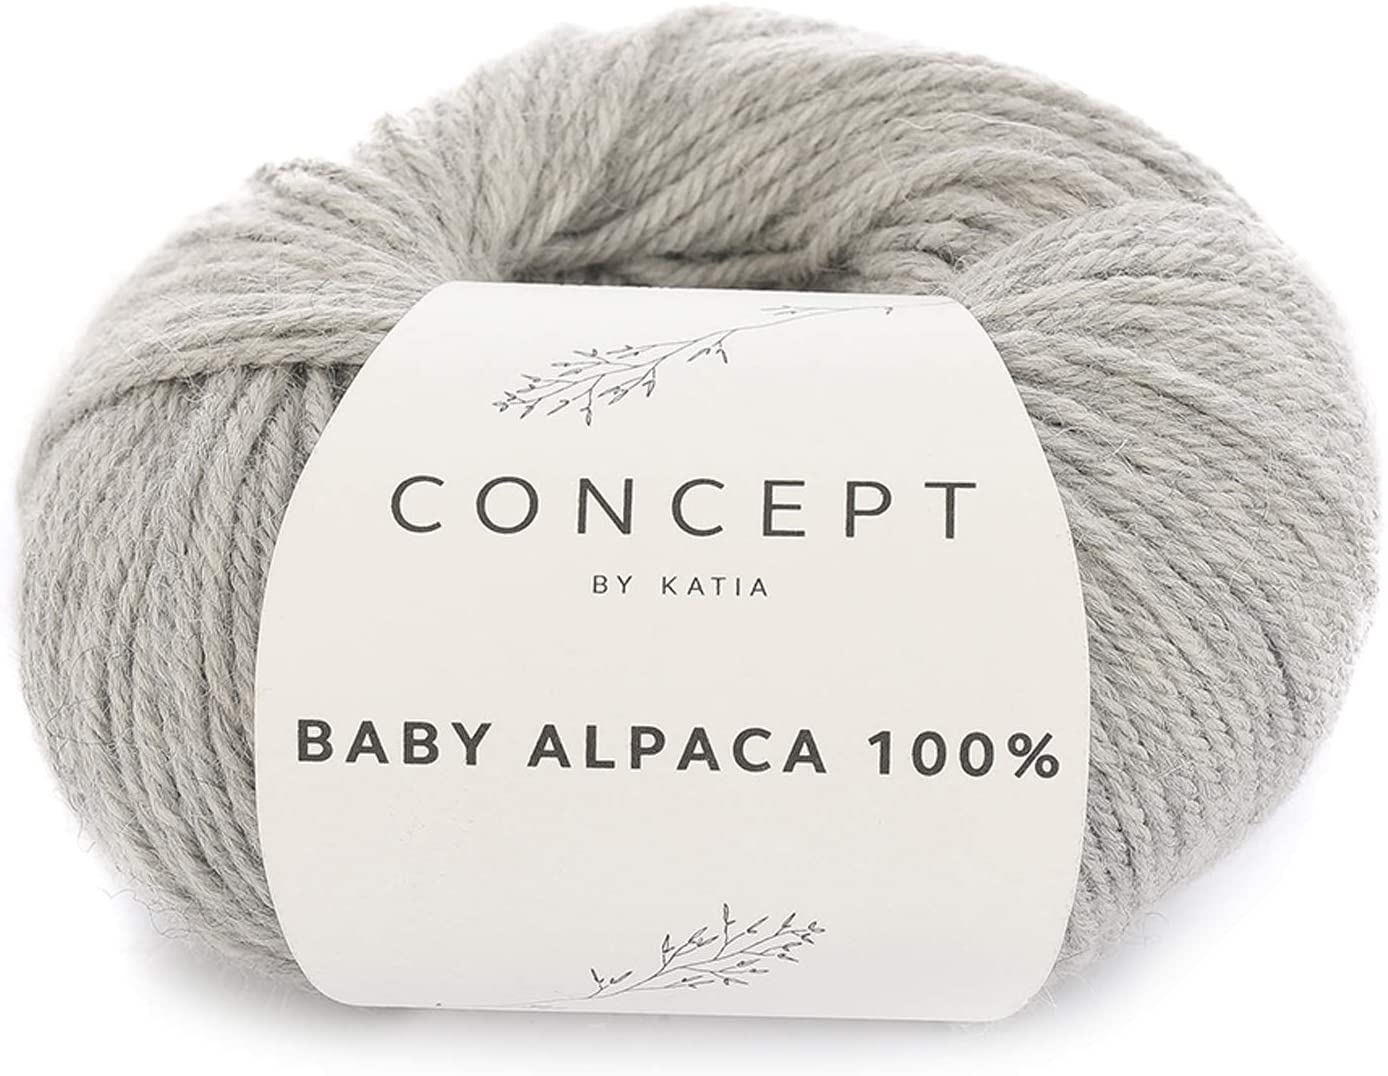 Baby Alpaca, Concept by Katia